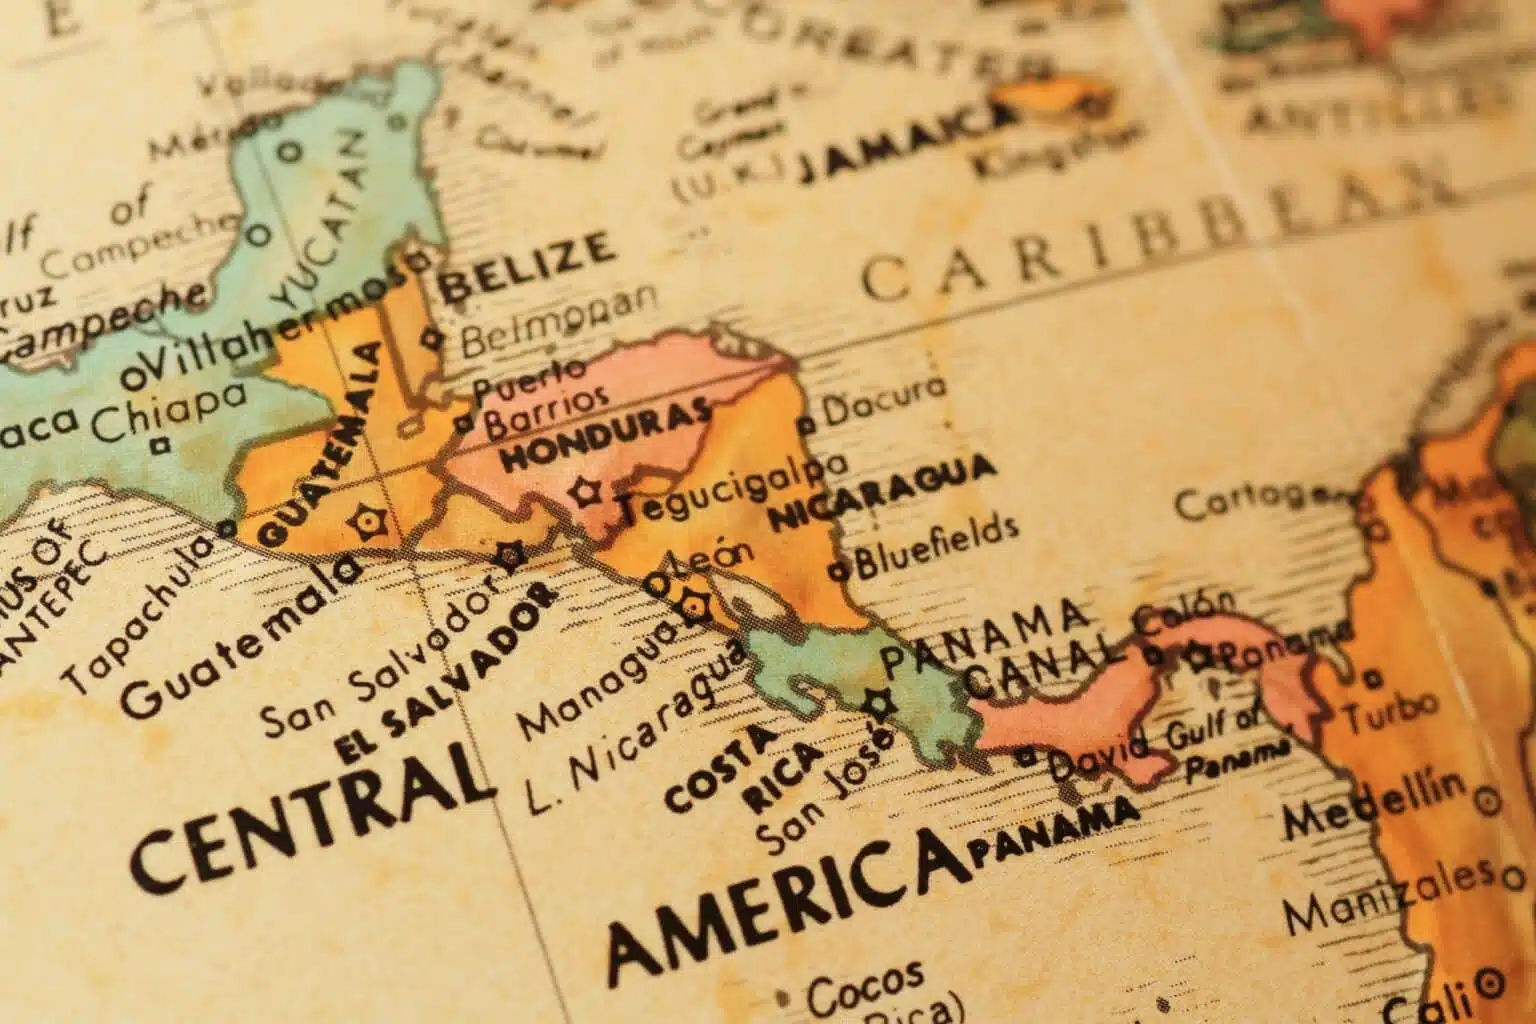 L’Amérique centrale, un héritage culturel métissé